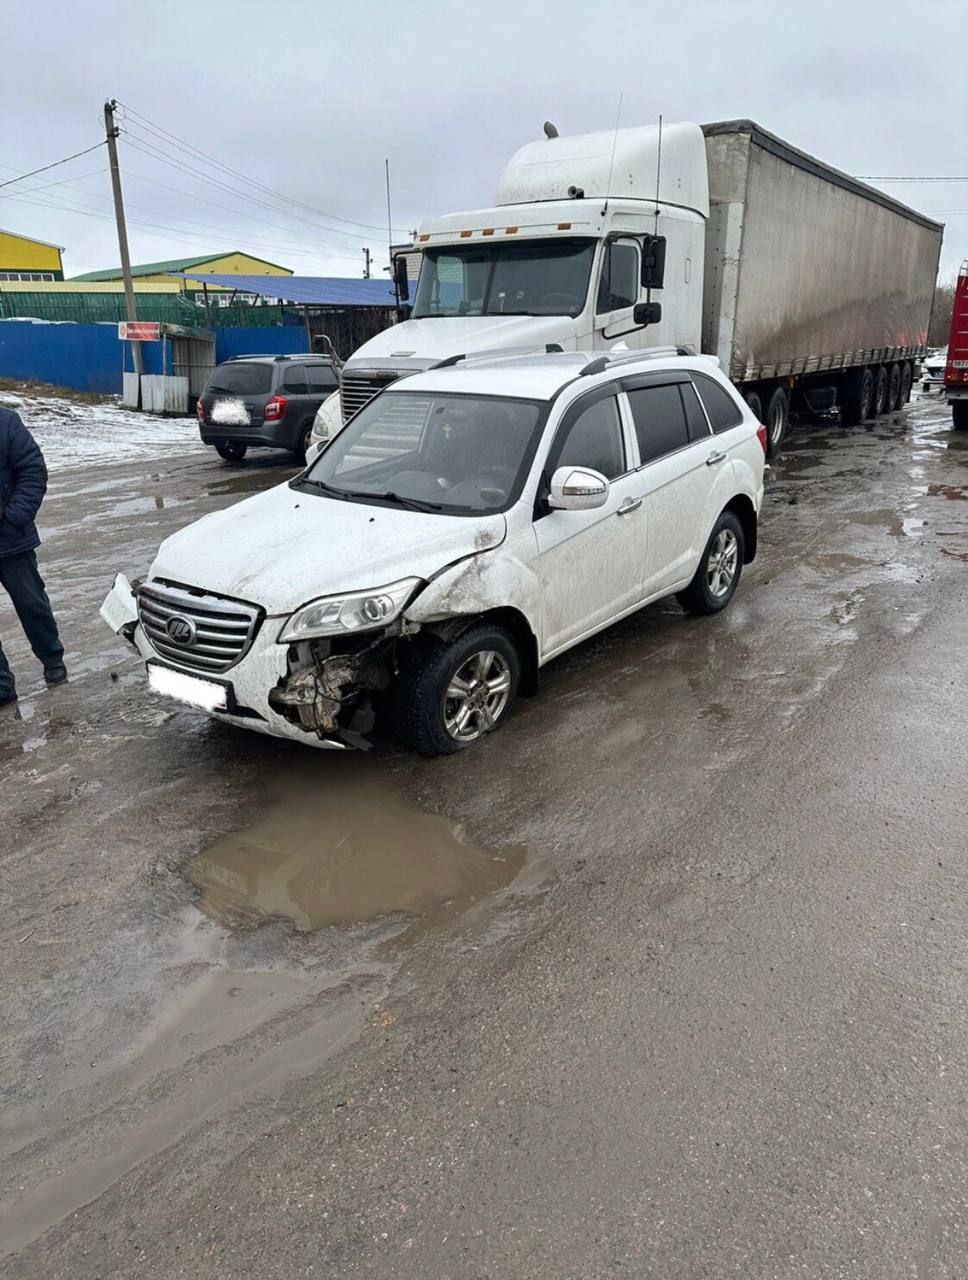 Под Воронежем два водителя пострадали в столкновении 4-х машин